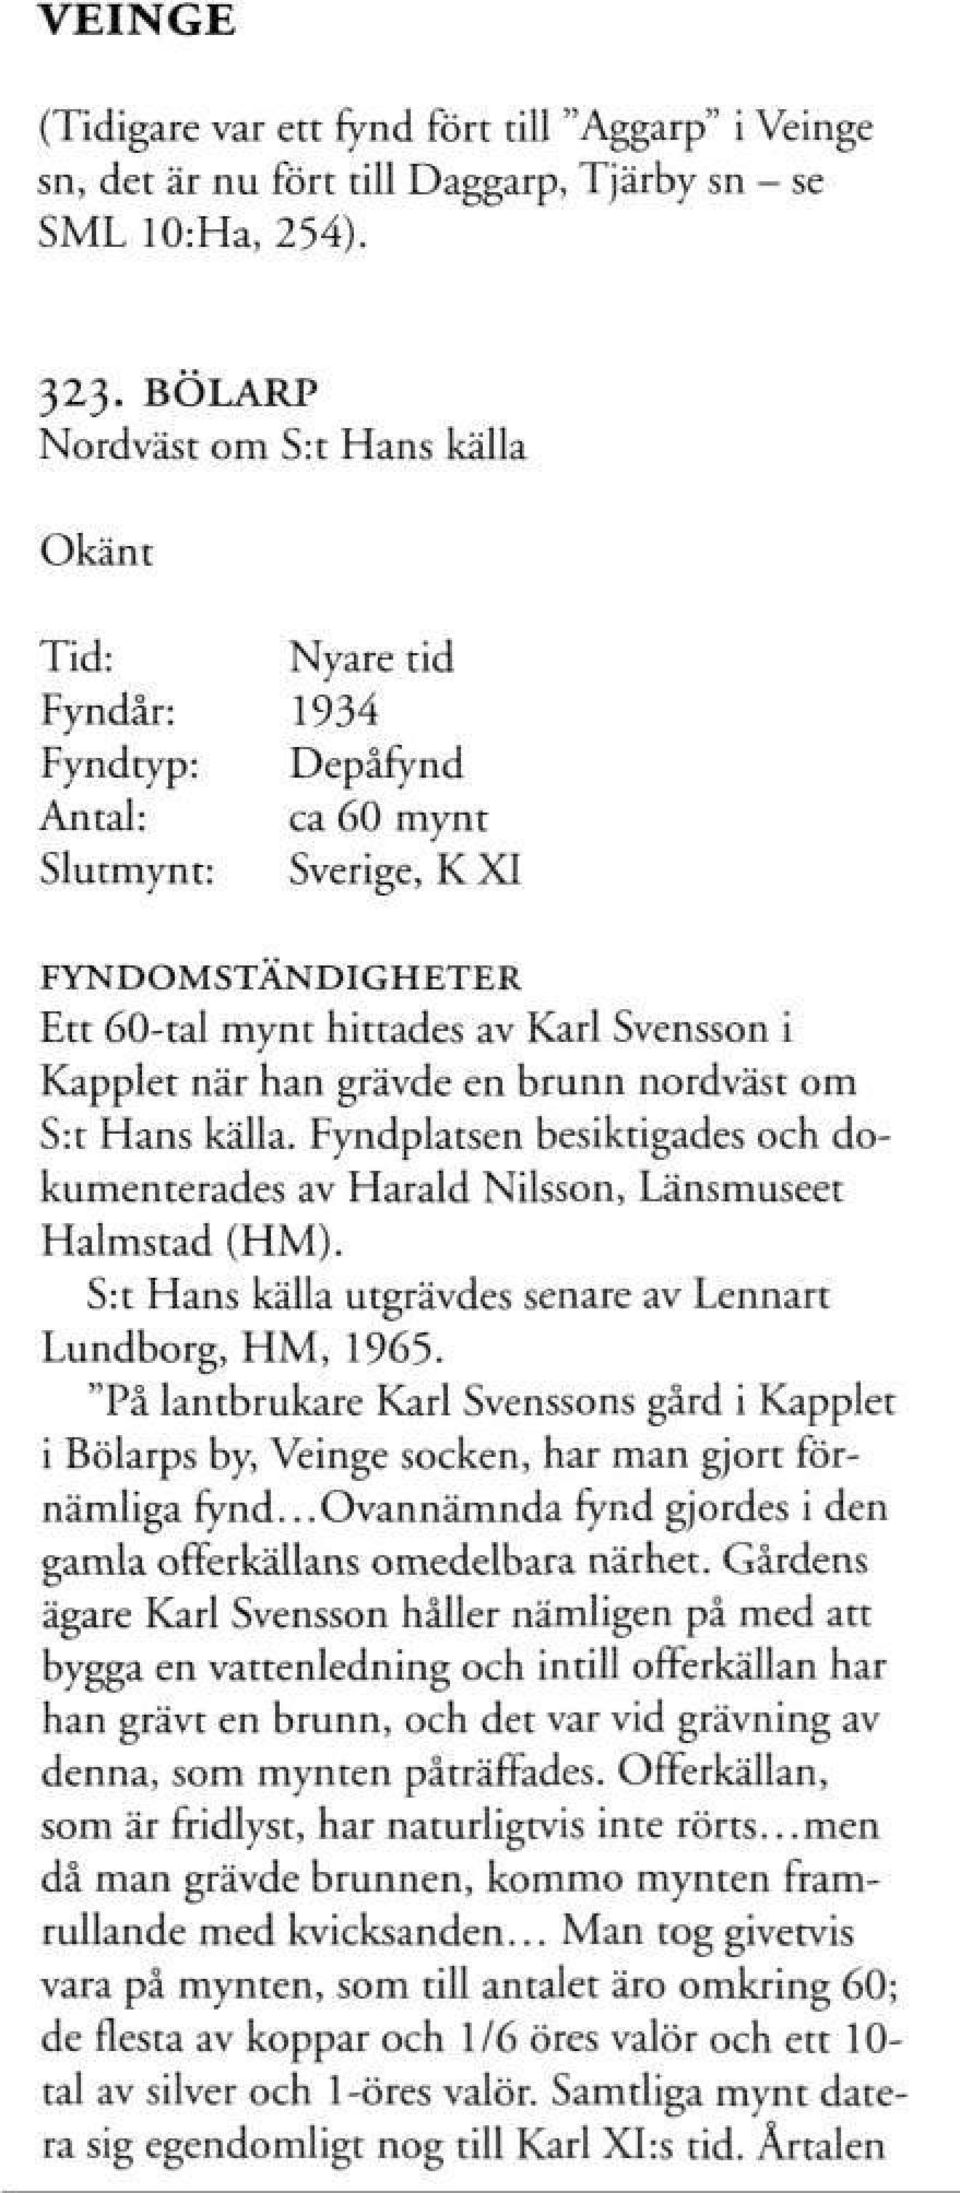 nordväst om S:t Hans källa. Fyndplatsen besiktigades och dokumenterades av Harald Nilsson, Länsmuseet Halmstad (HM). S:t Hans källa utgrävdes senare av Lennart Lundborg, HM, 1965.